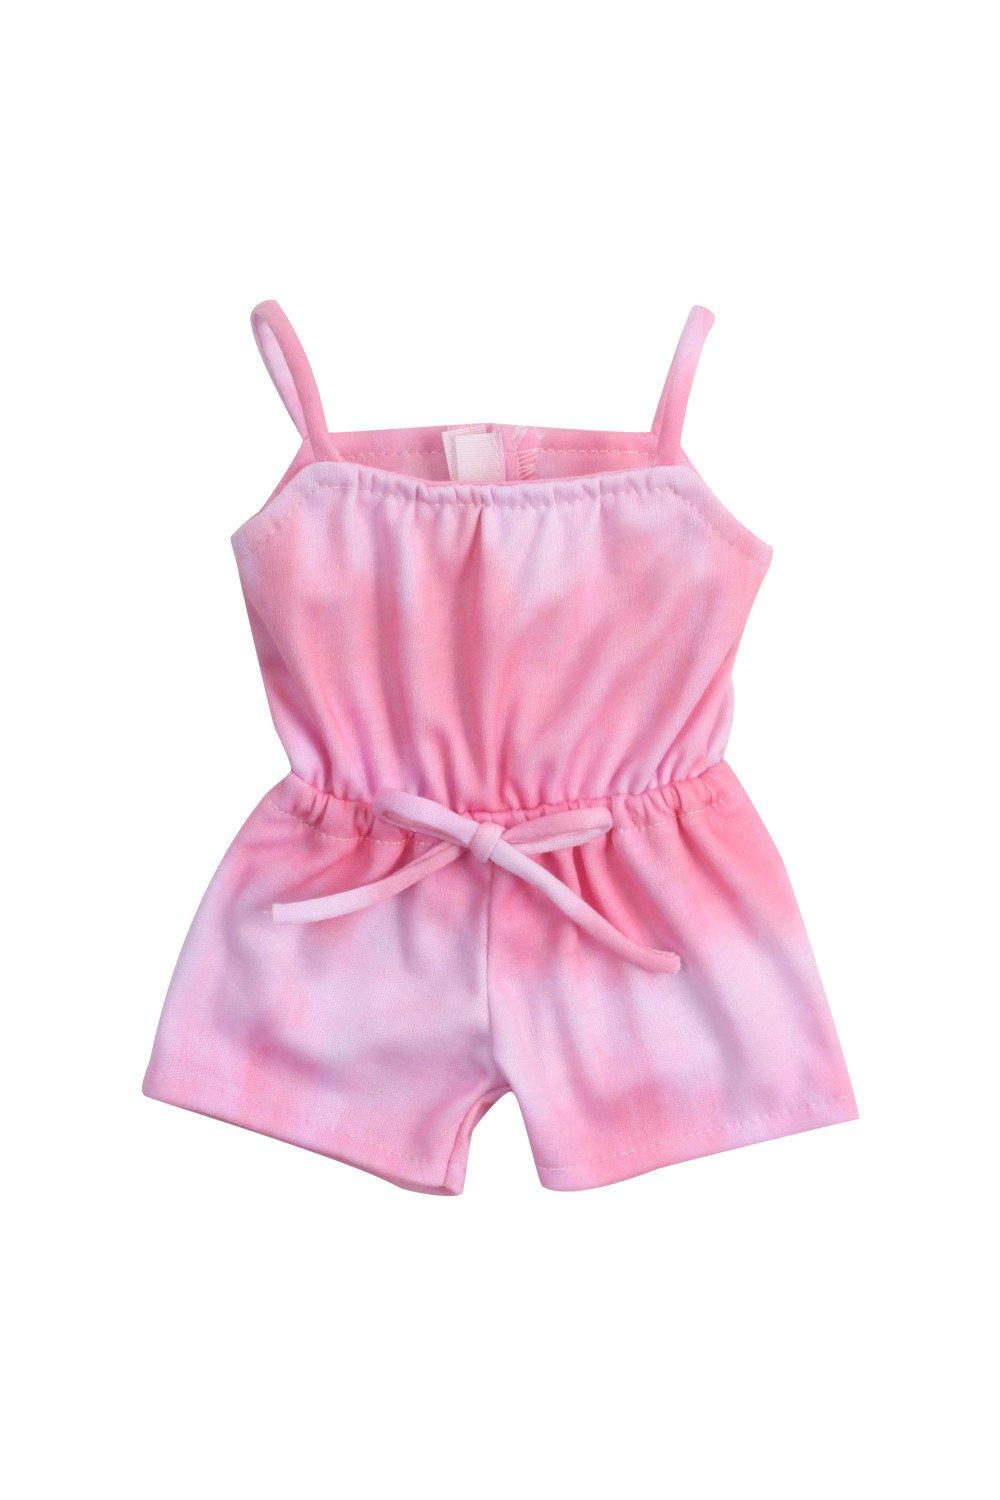 Sophia’s  18" Doll Pink Tie Dye Romper Playsuit, Doll Clothing